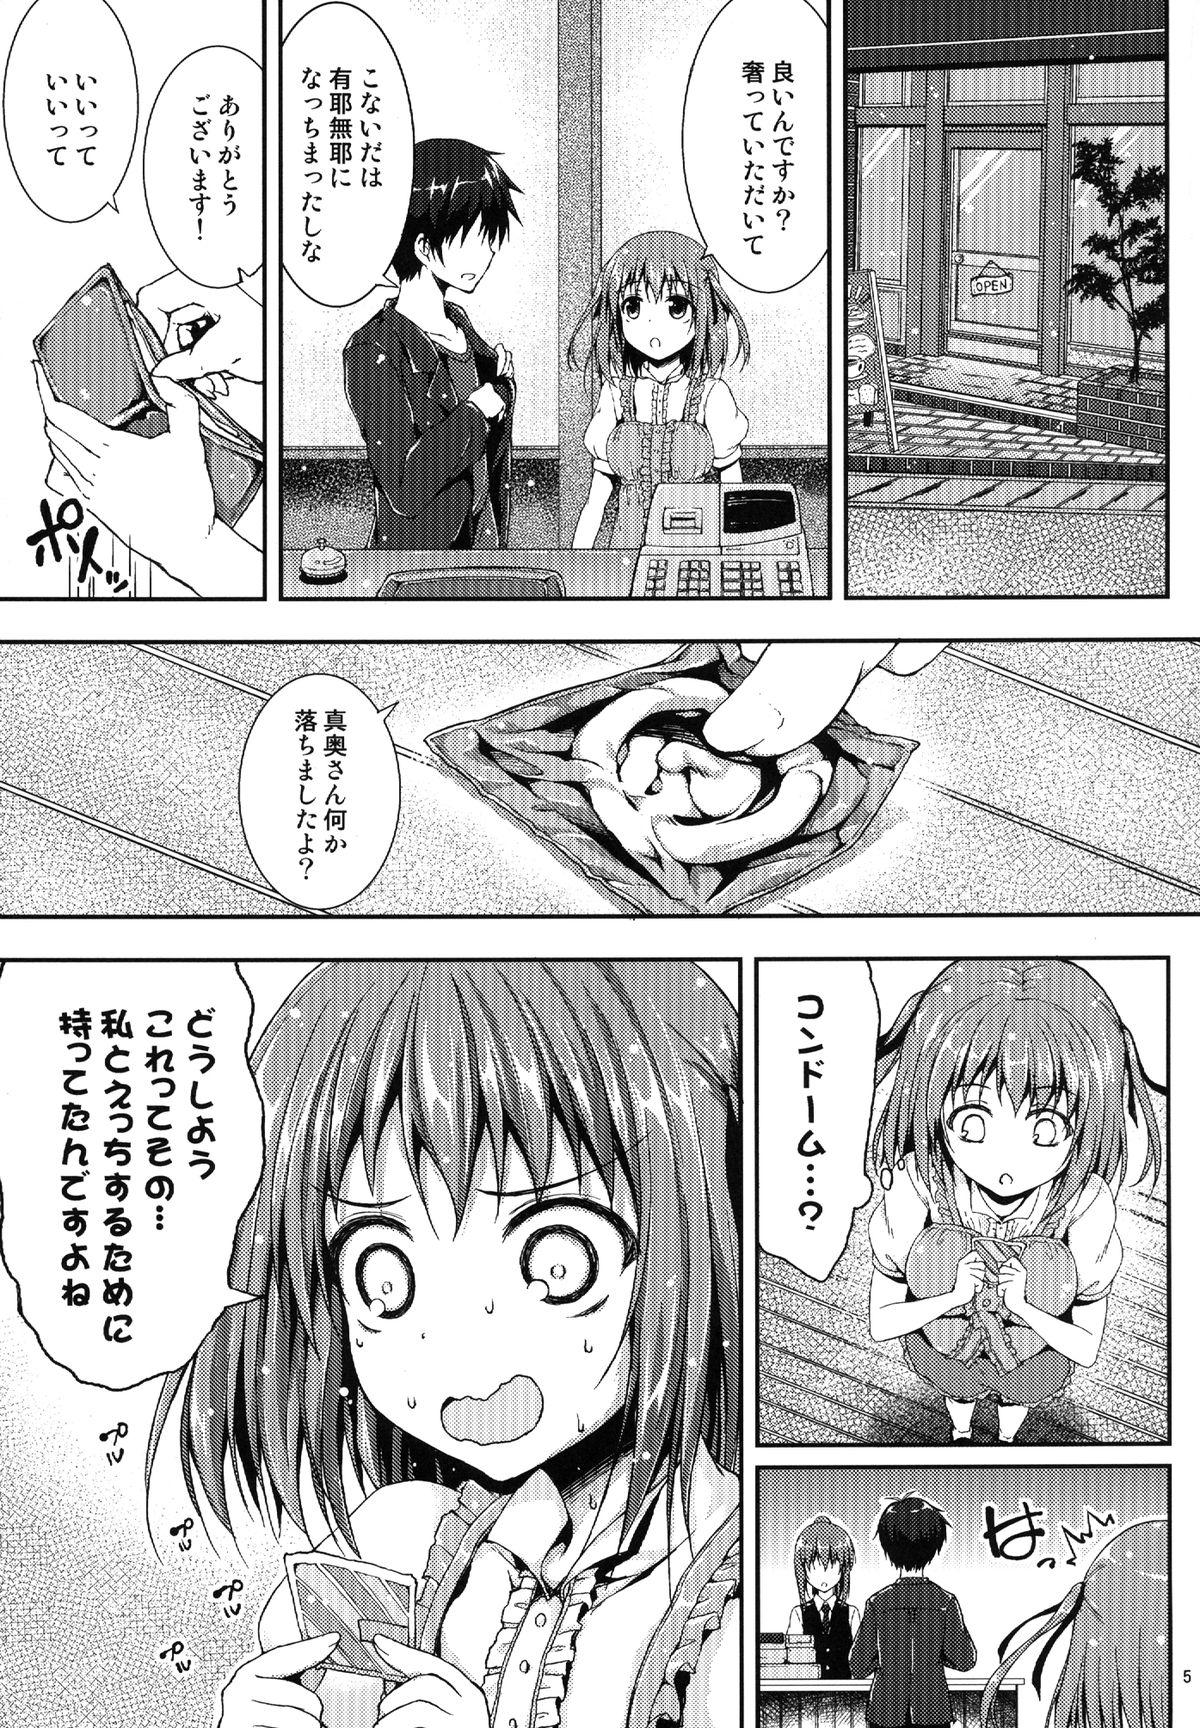 Boobies Koisuru Chi-chan! - Hataraku maou-sama 18yearsold - Page 4